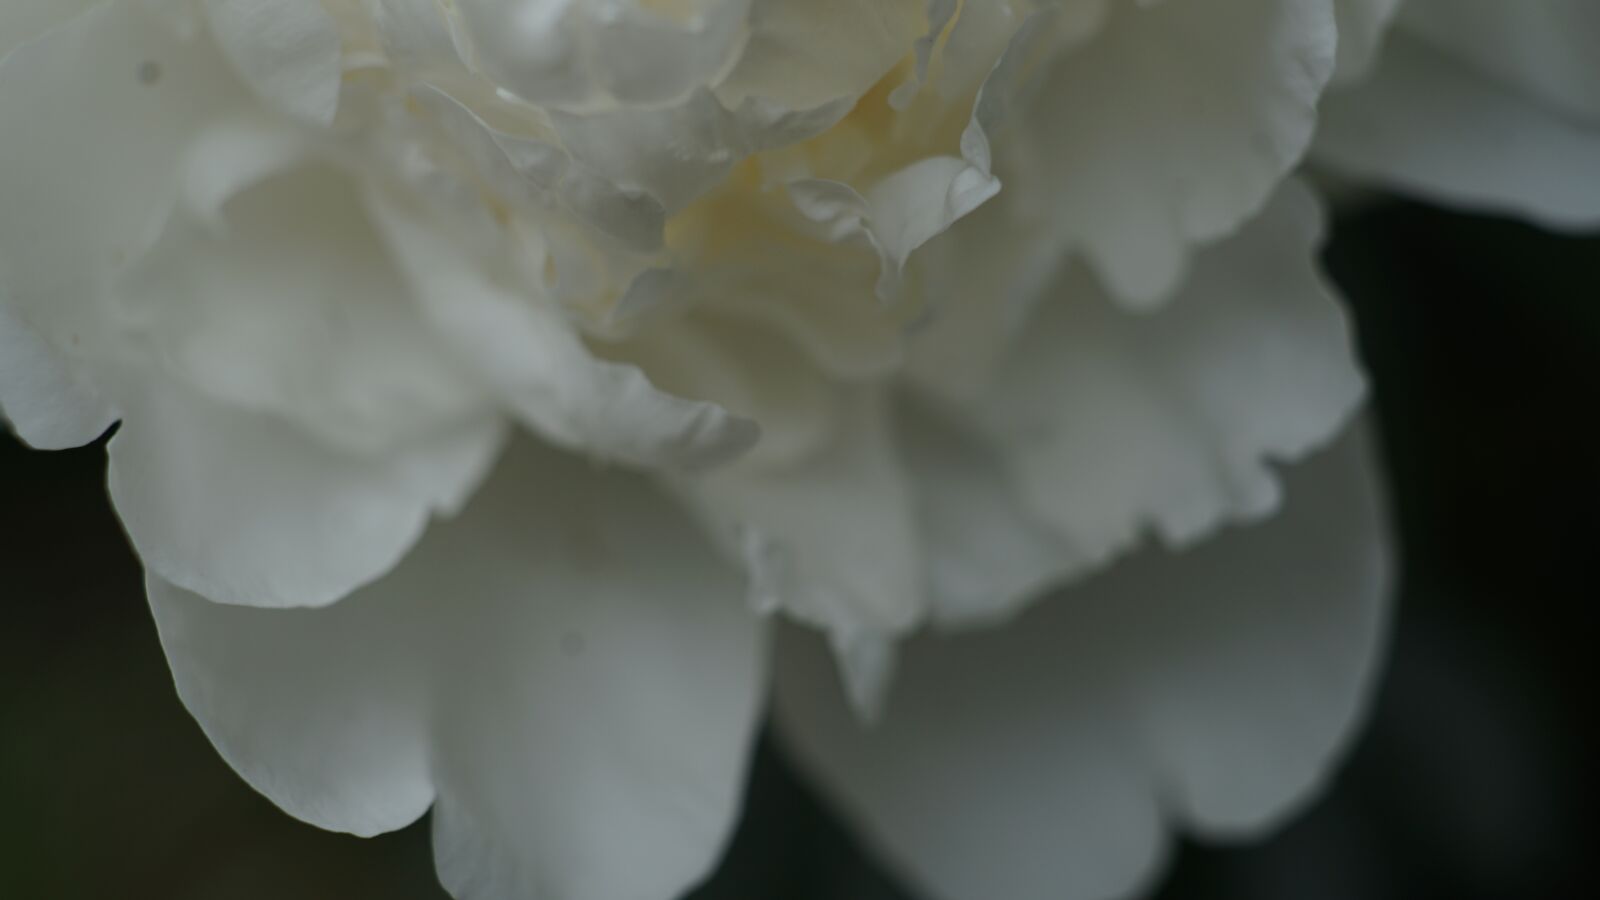 Sony a7 II + E 50mm F1.4 sample photo. Peony, flowers, white photography